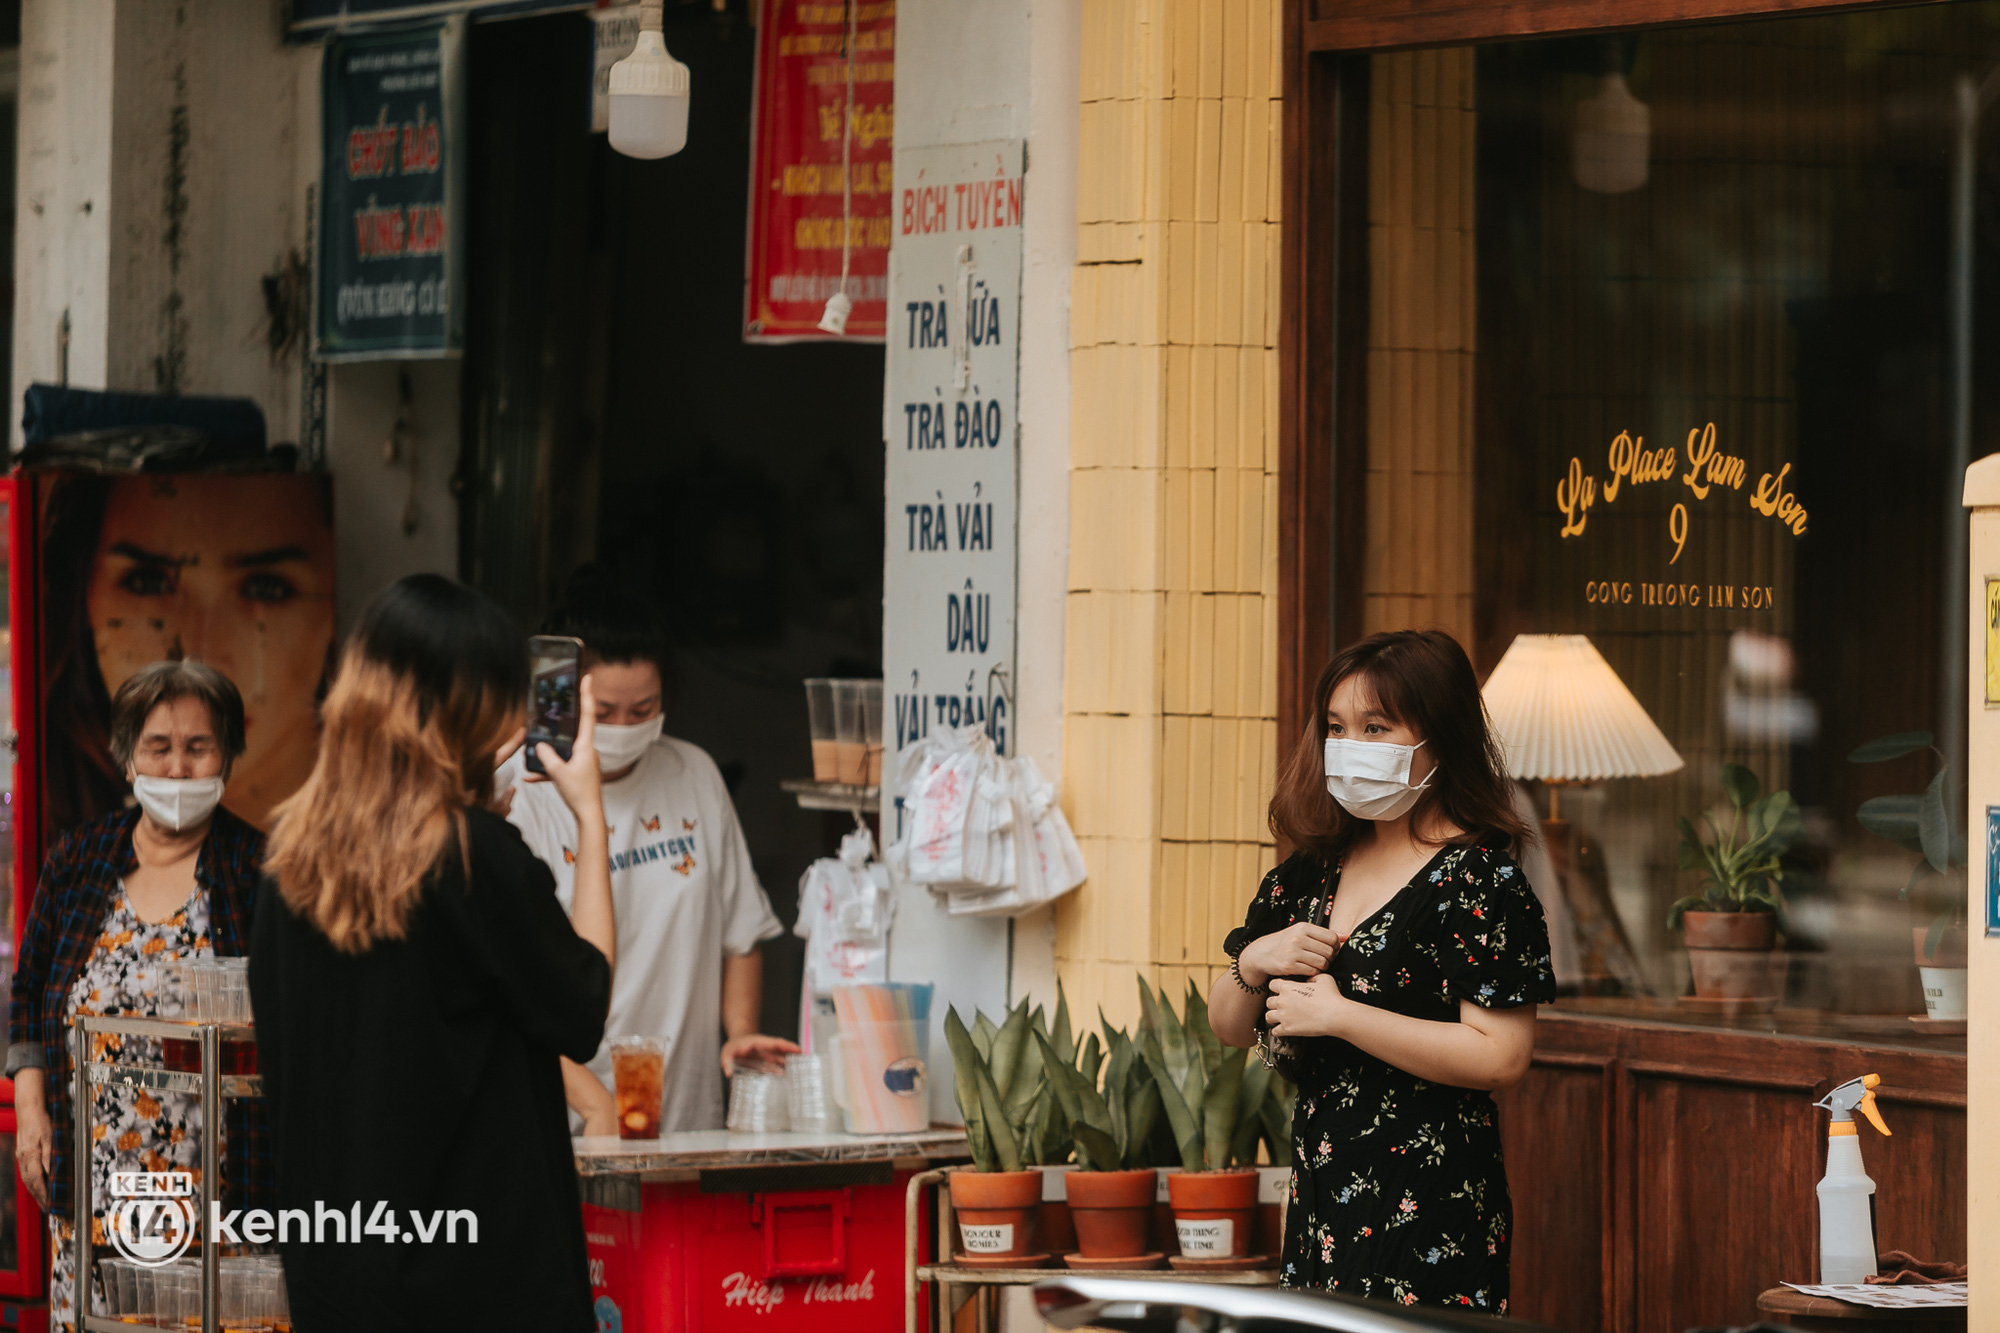 Giữa mùa dịch, một hãng cà phê đình đám mở tới 2 chi nhánh mới ở Sài Gòn: Giới trẻ đang kéo nhau check-in rần rần! - Ảnh 7.